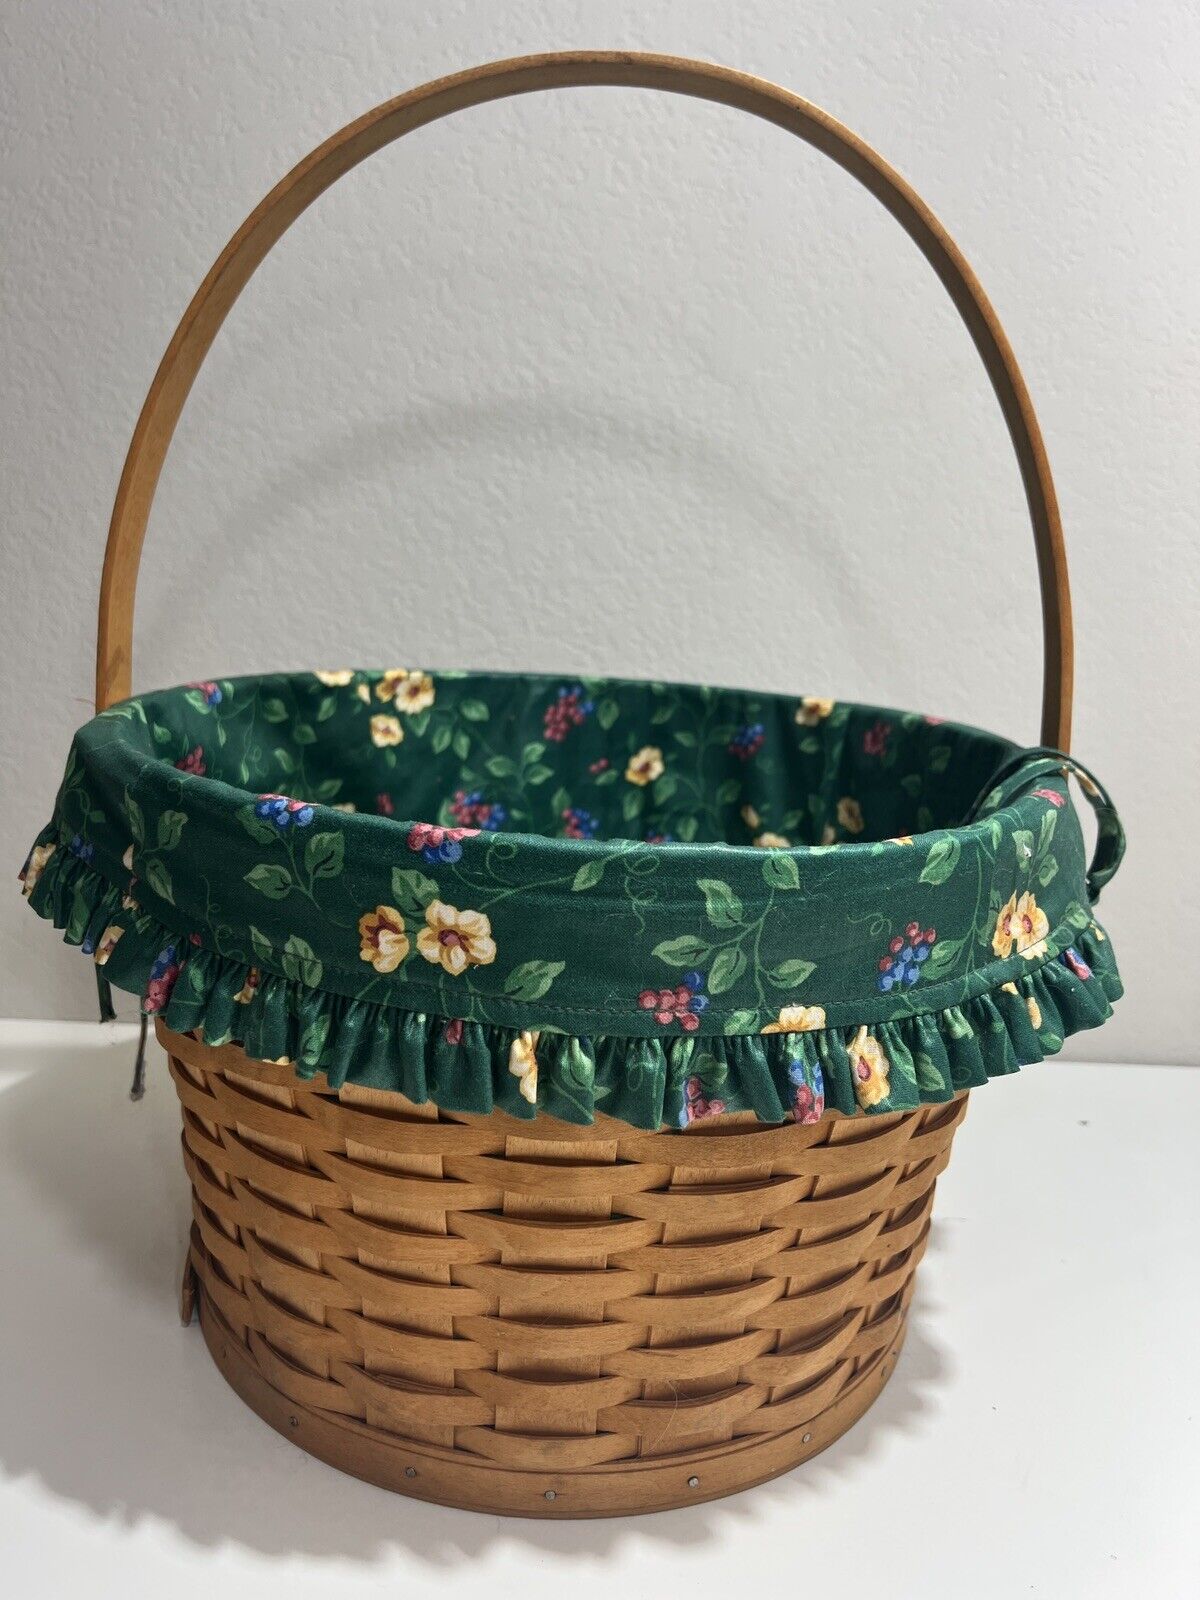 Longaberger Basket Round Liner Green Floral 1996 Vintage Retired Large Handle